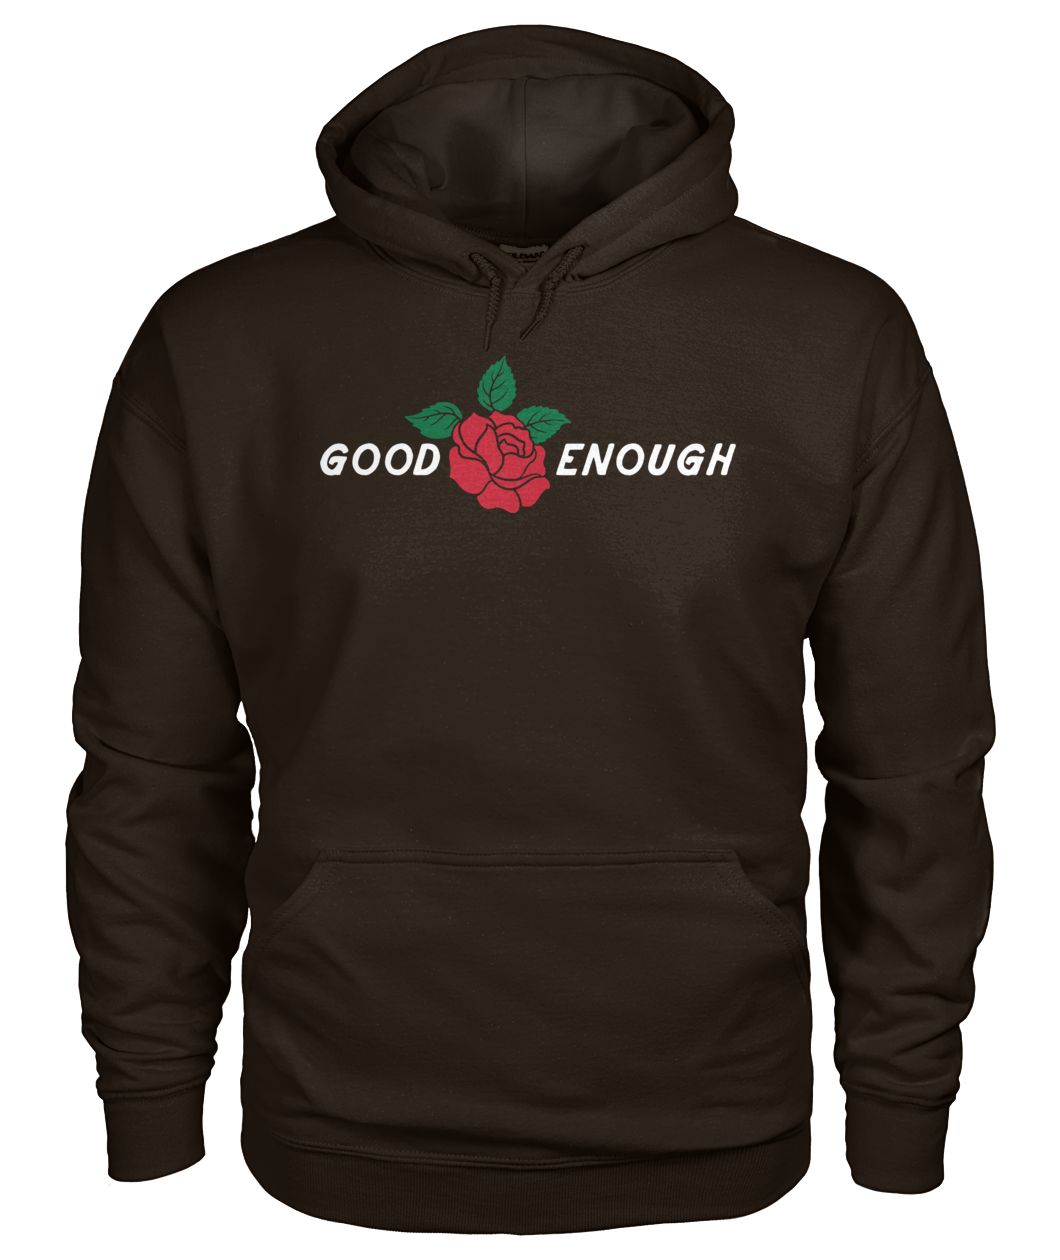 Good enough red rose gildan hoodie